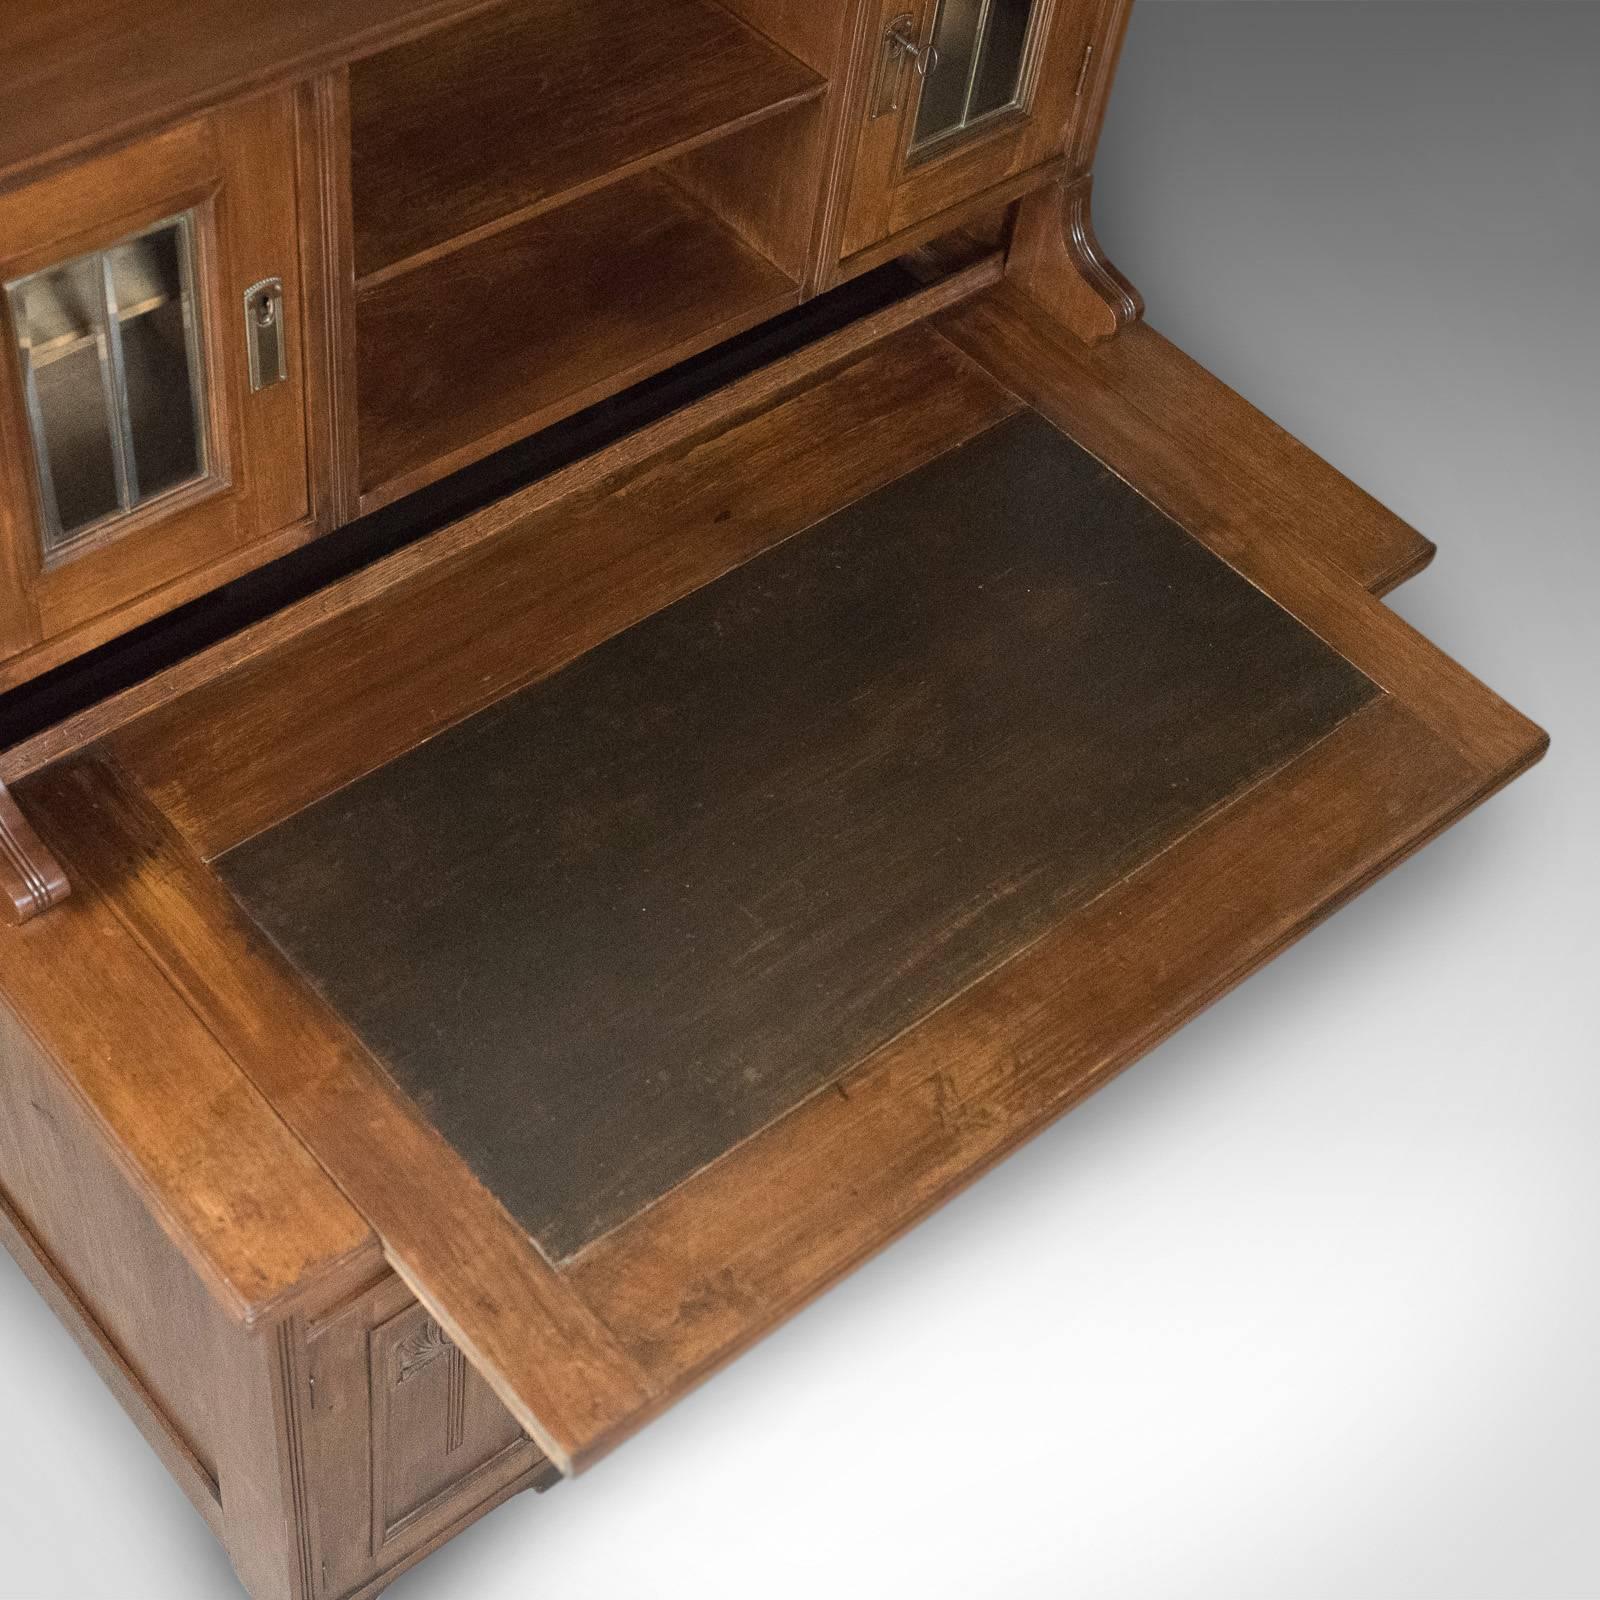 Antique Art Nouveau Desk, English, Victorian, Walnut Cabinet Liberty-Esque 1